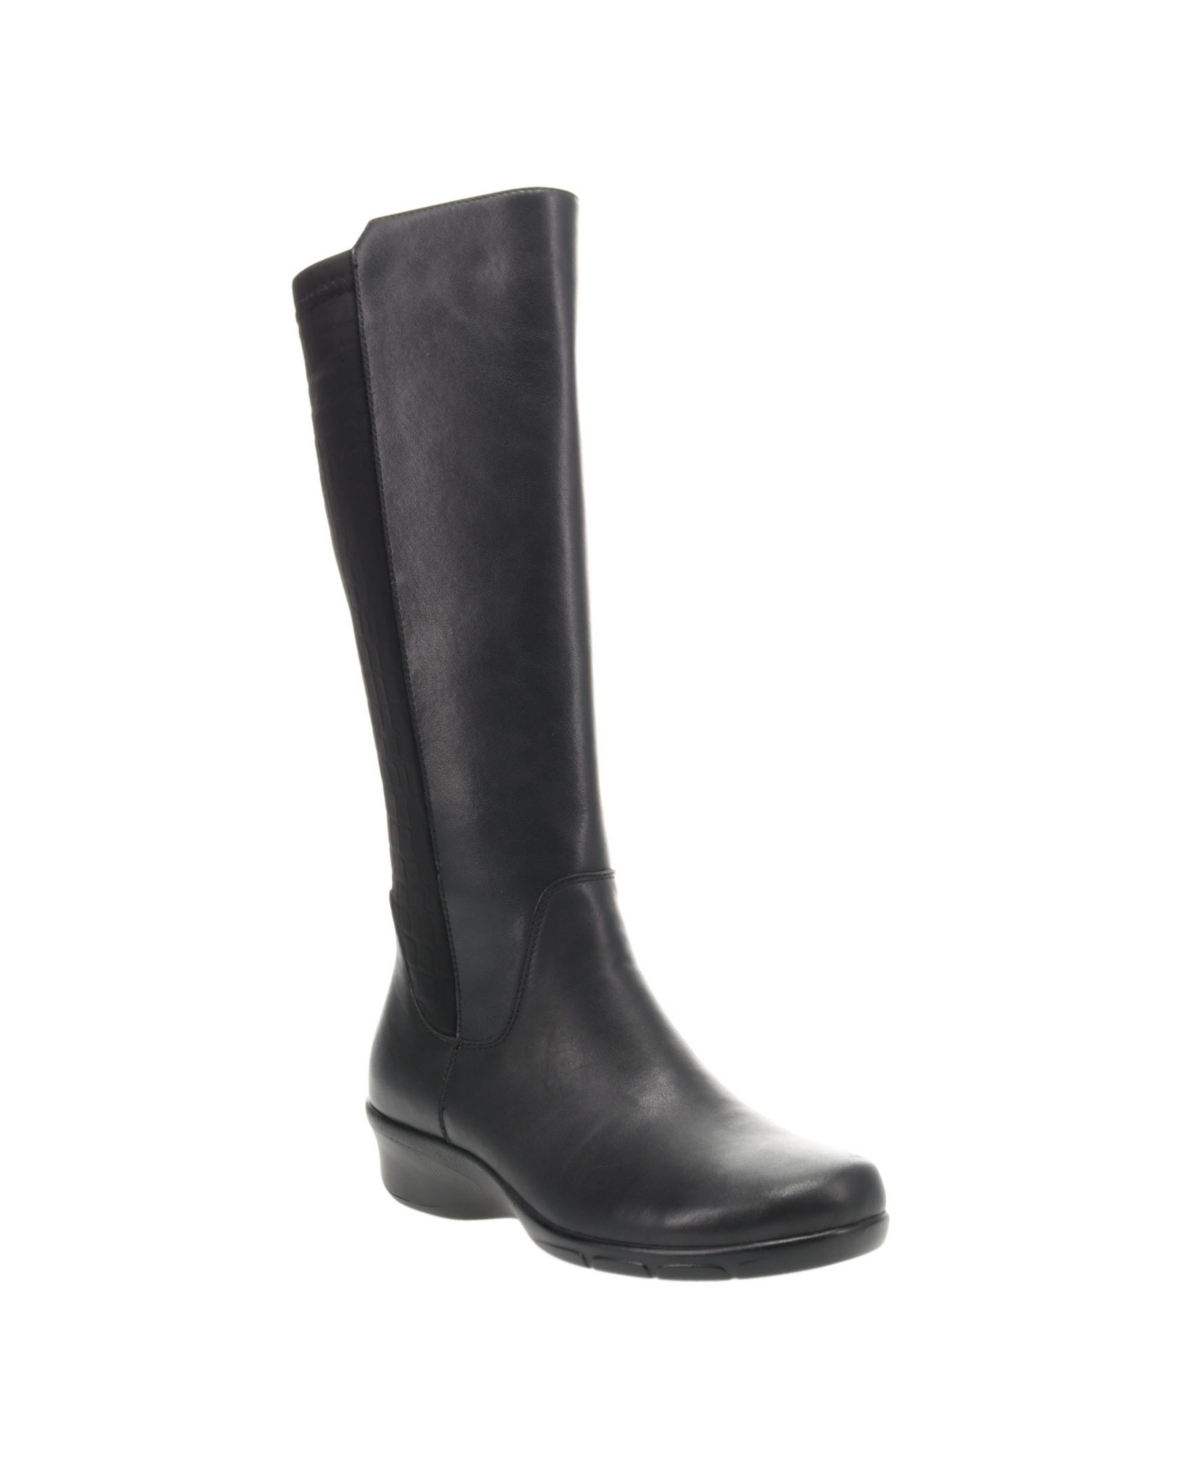 Women's West Regular Calf Tall Boots - Black